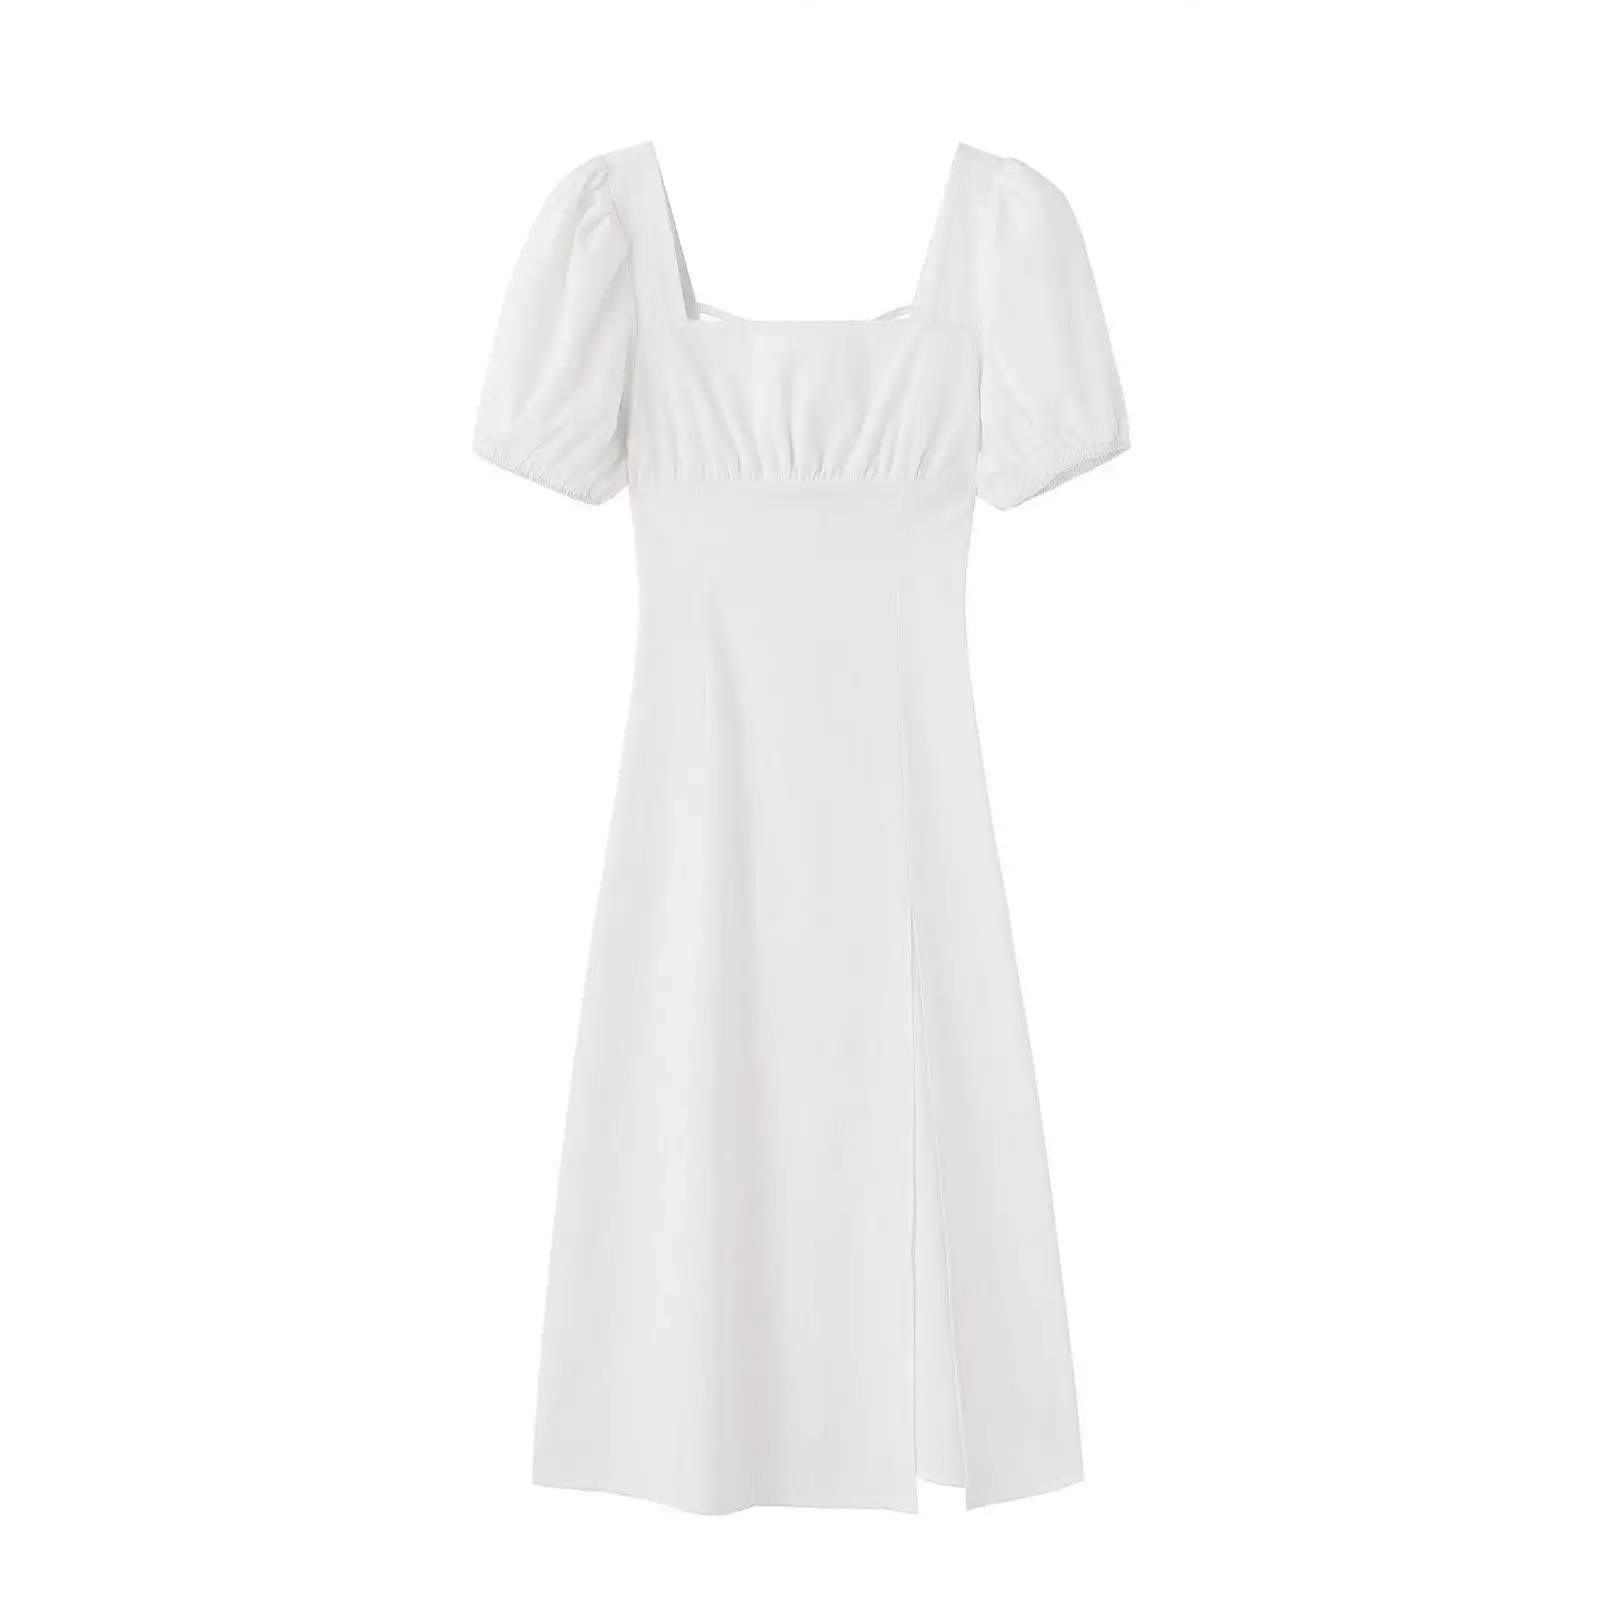 SH397-Vestidos informales de lino y algodón para mujer, vestidos cuadrados de alta calidad con cuello cuadrado, color blanco, manga corta, espalda calada, con cordones, para verano